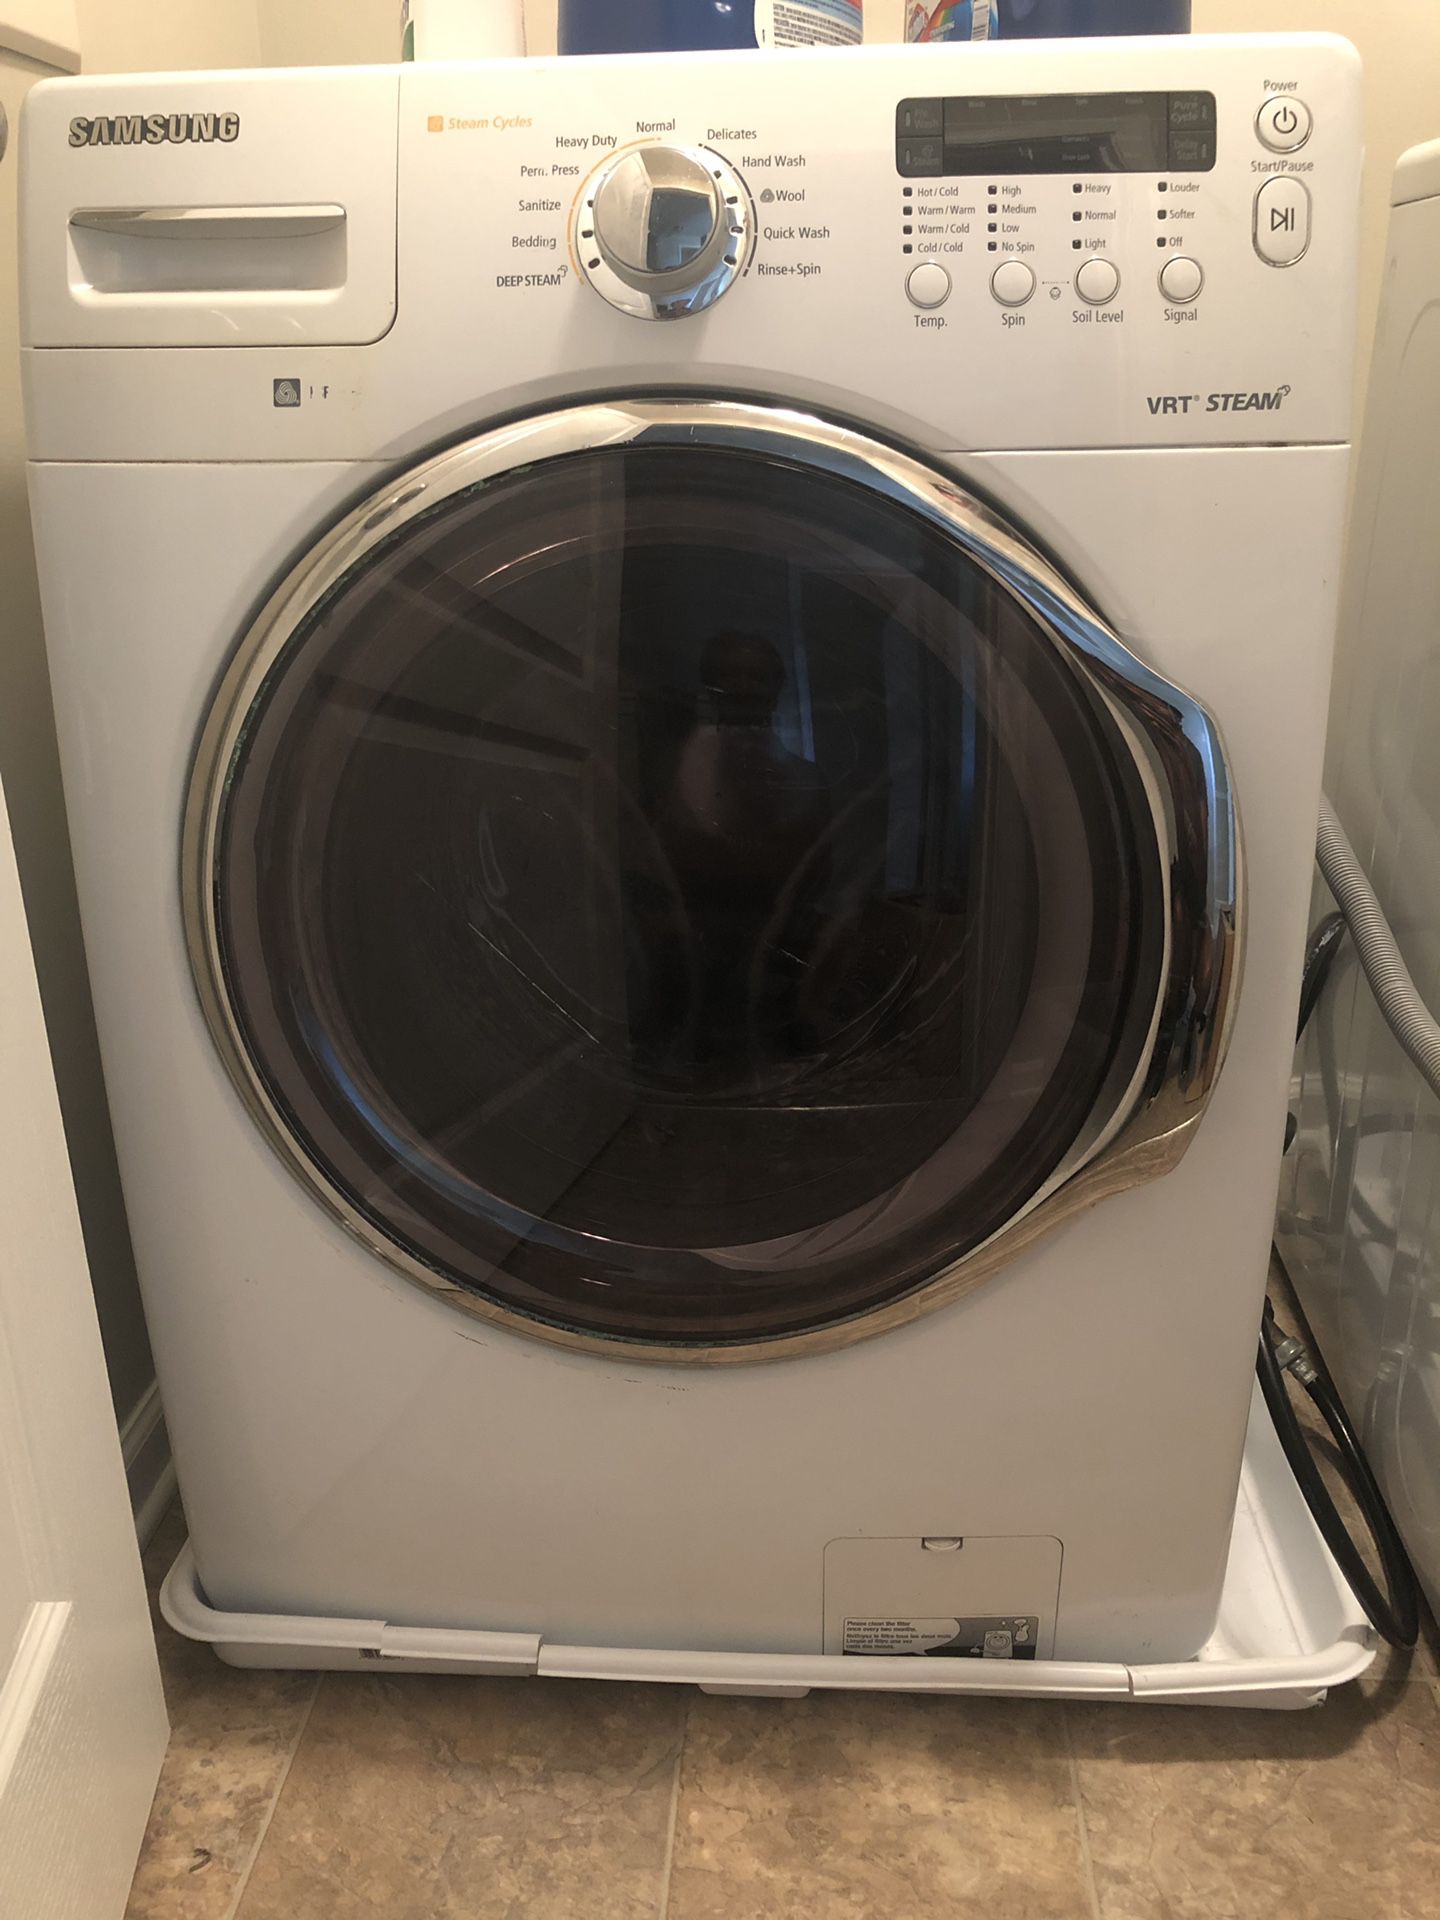 Samsung VRT Steam washer/dryer set